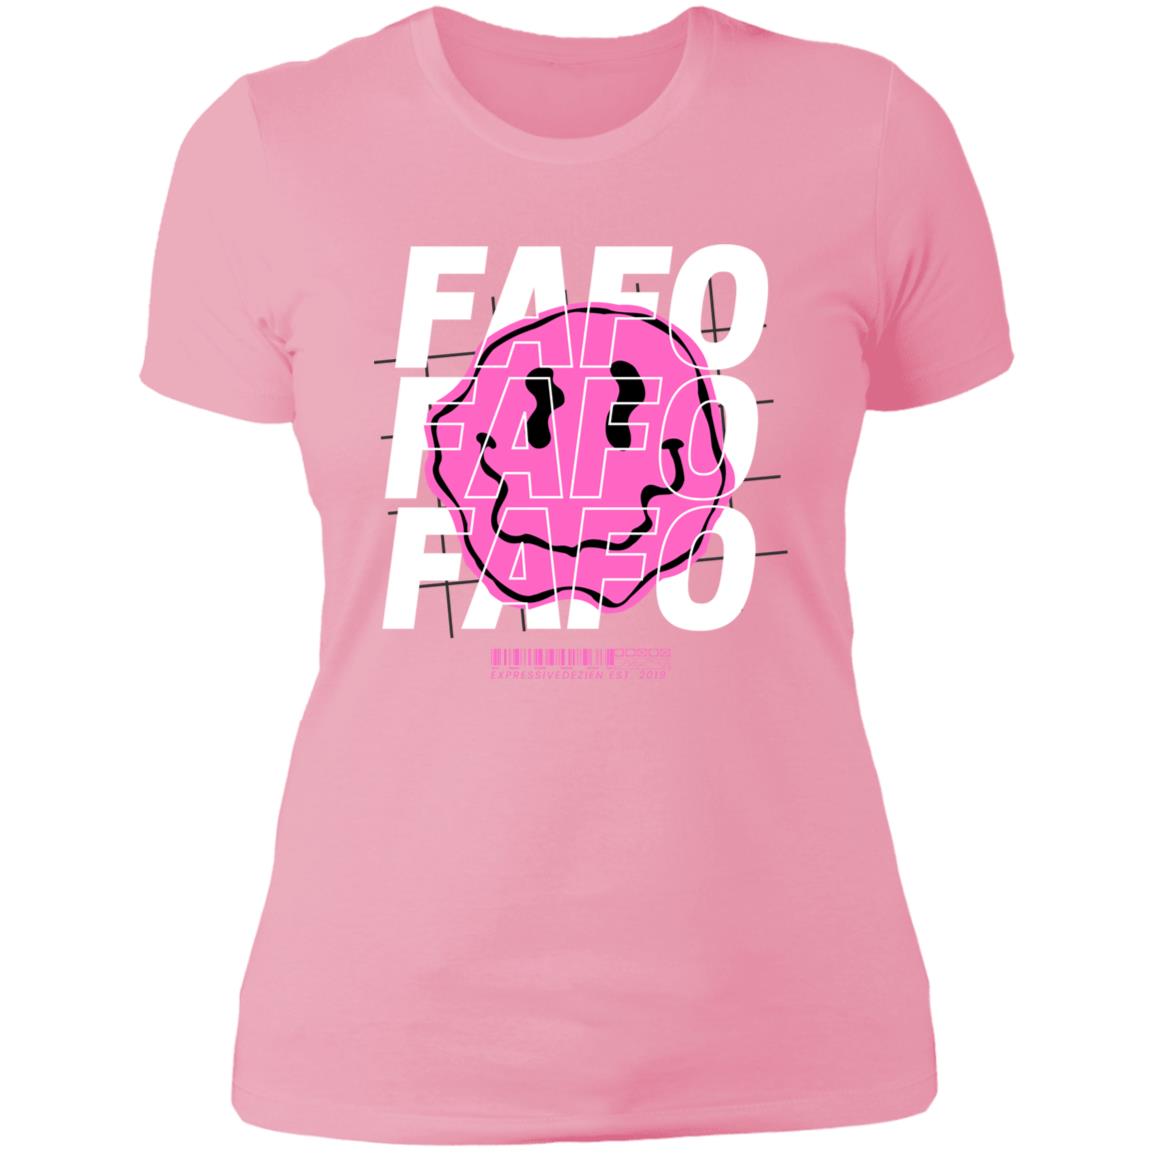 Pink White FAFO Smiley Face Positive T-Shirt - Ladies' Boyfriend Fit - Expressive DeZien 